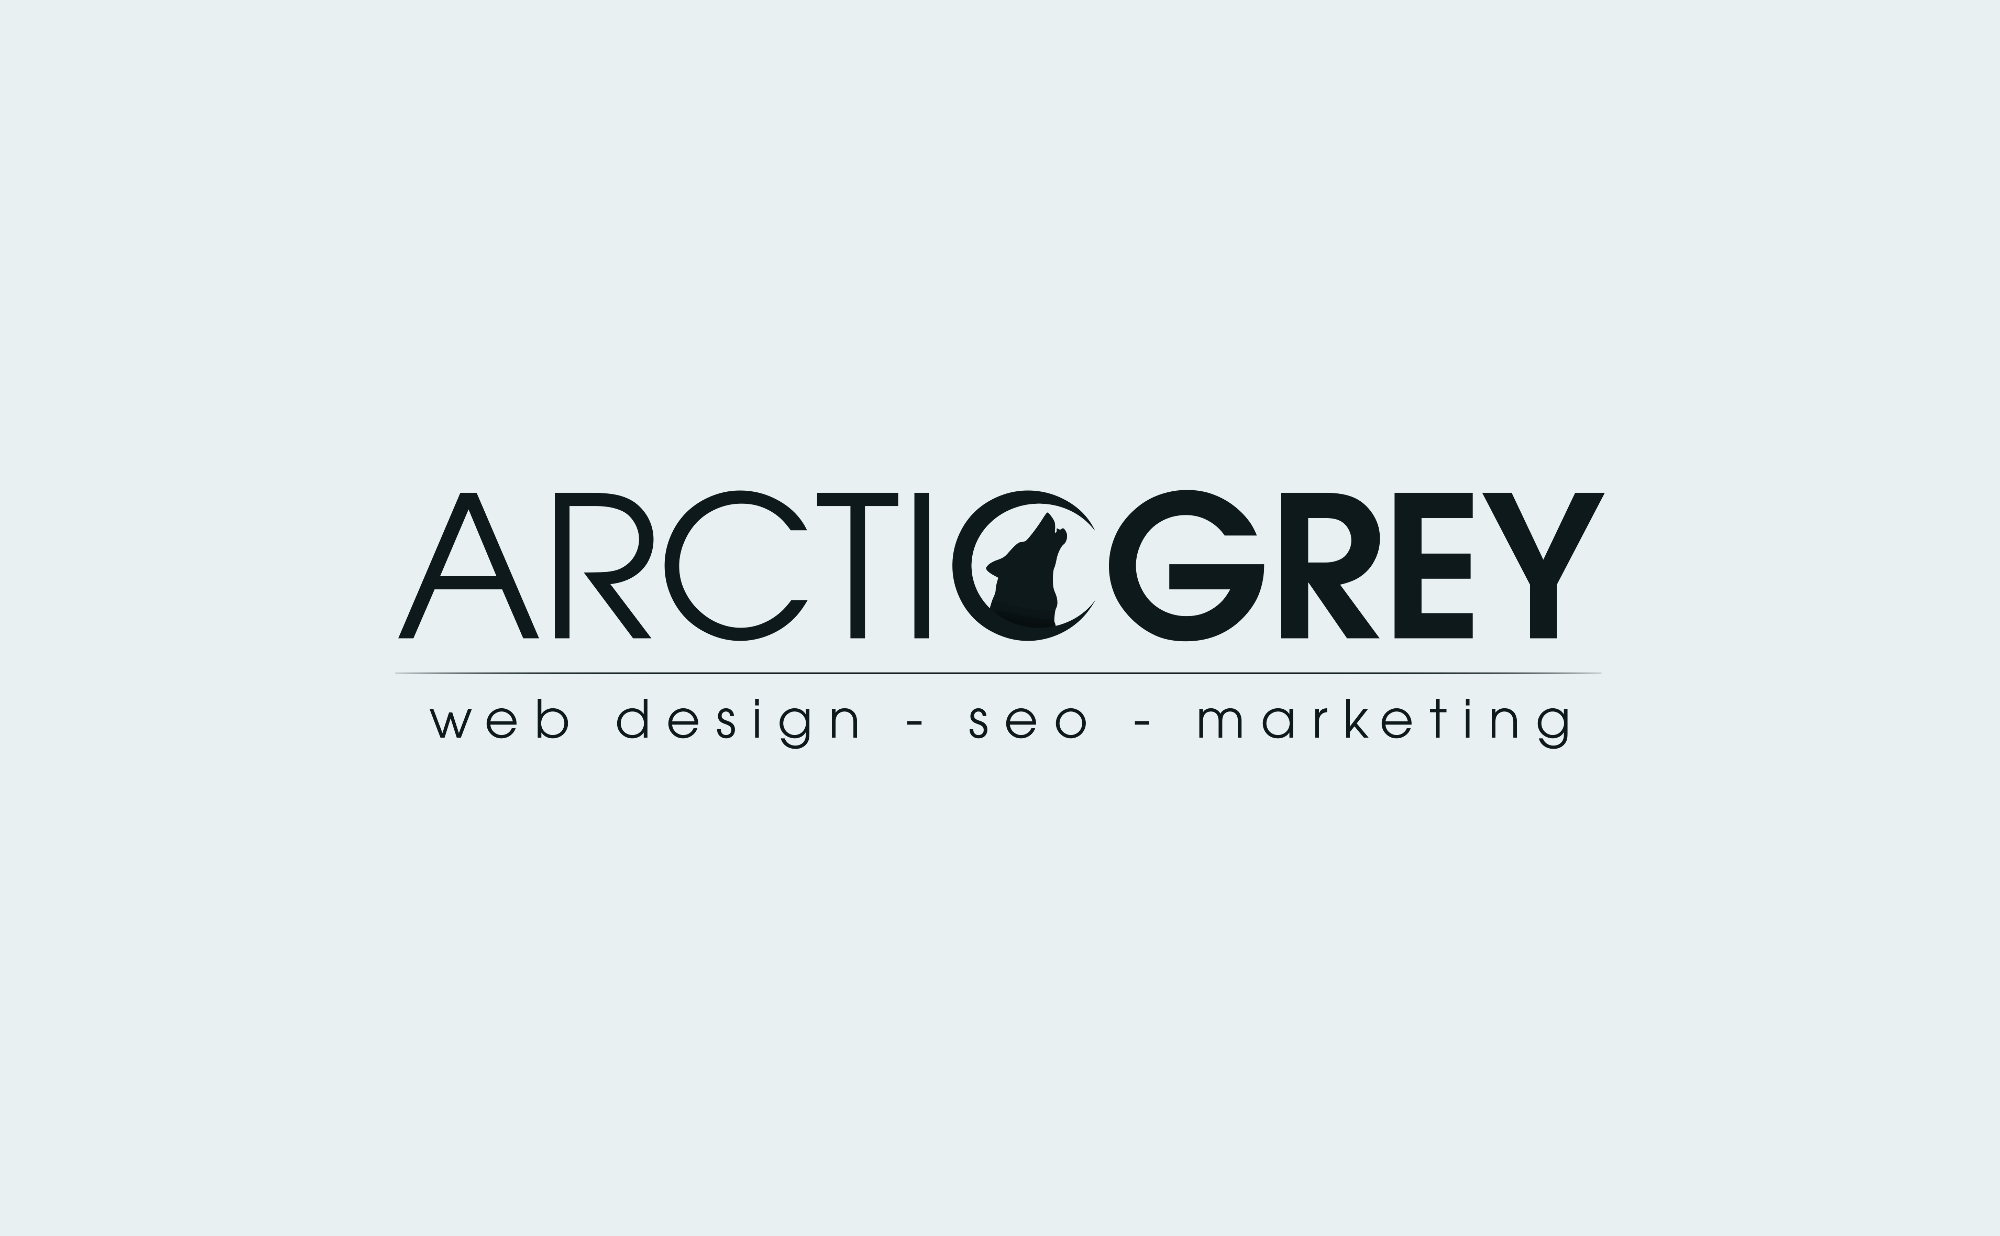 Top SEO Website Design Company Logo: Arctic Grey Inc